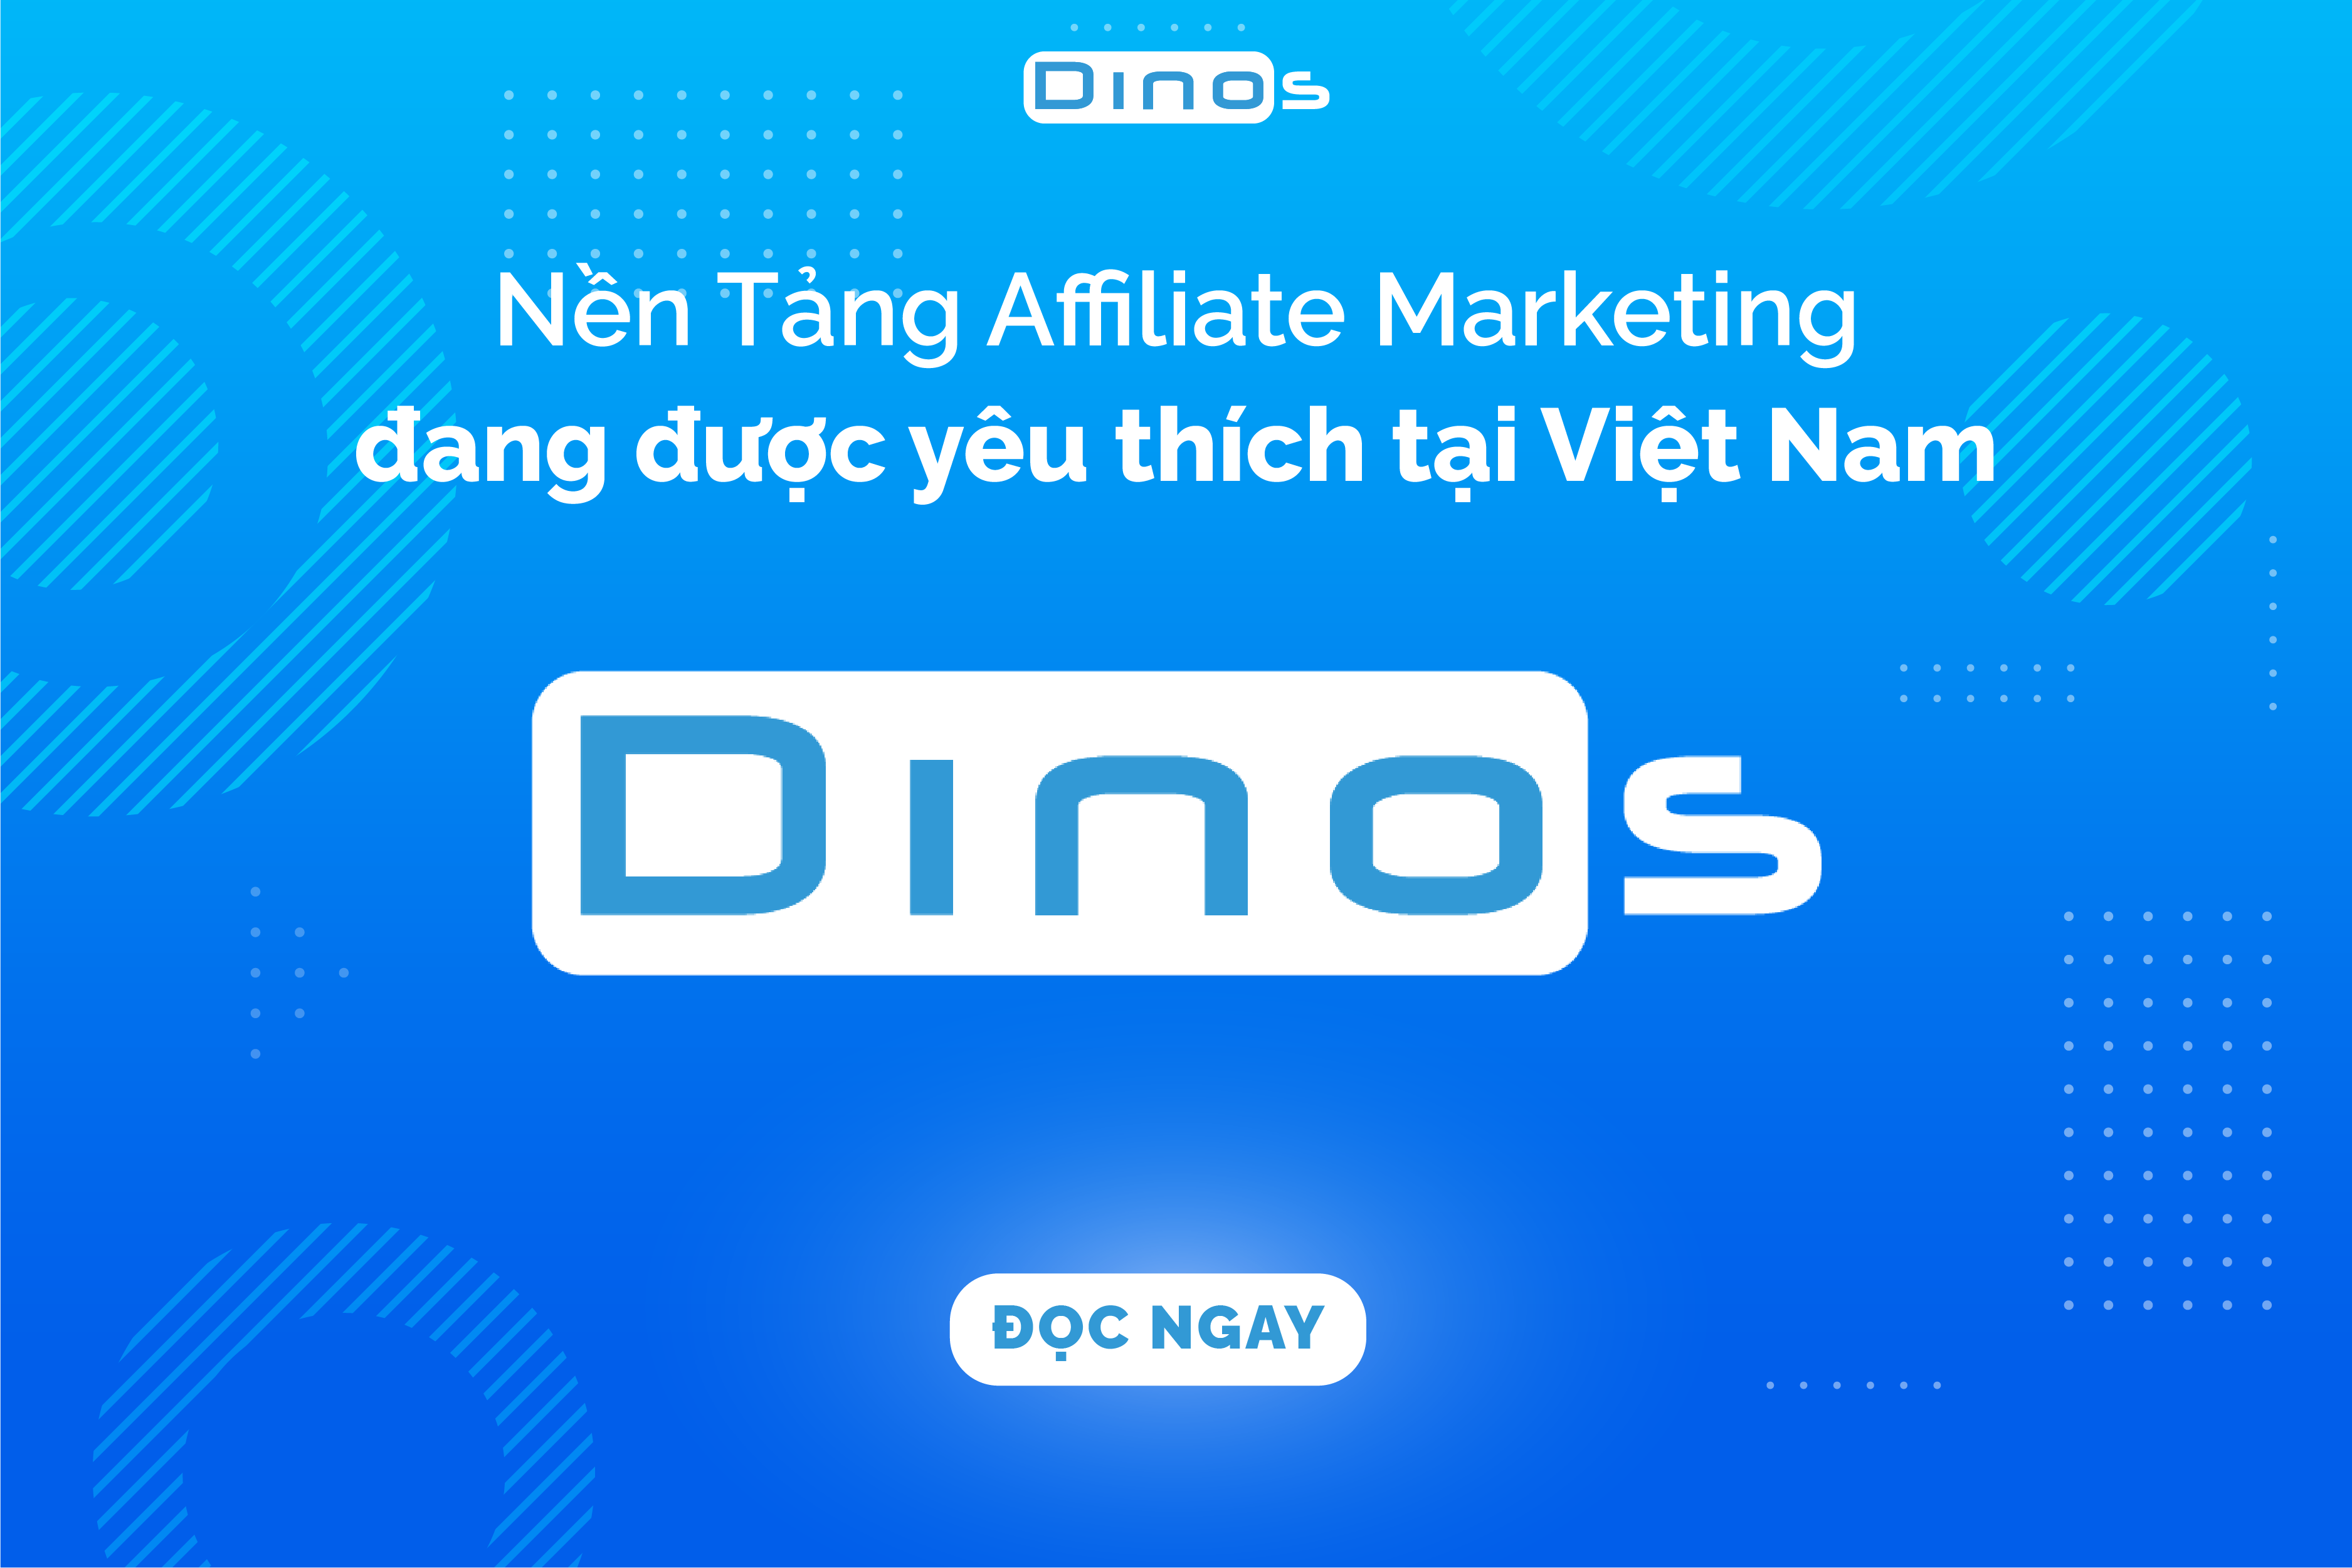 Dinos - Nền tảng Affiliate Marketing đang được yêu thích tại Việt Nam